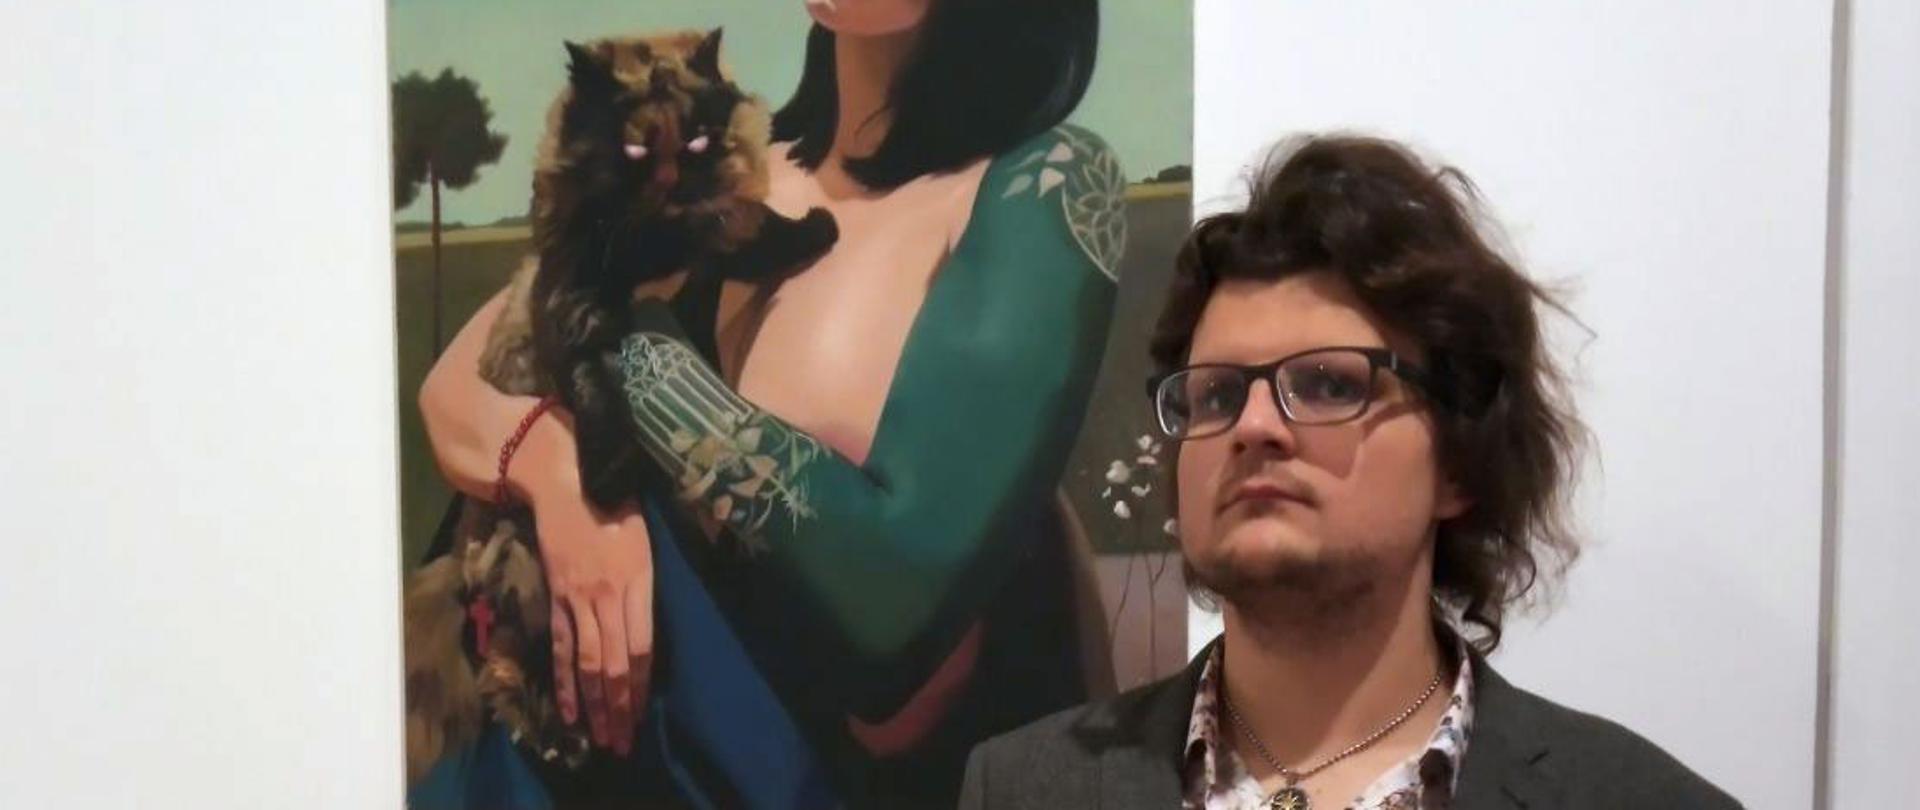 Na pierwszym planie Michał Rostkowski, w tle jego obraz przedstawiający kobietę trzymającą kota na ręku.